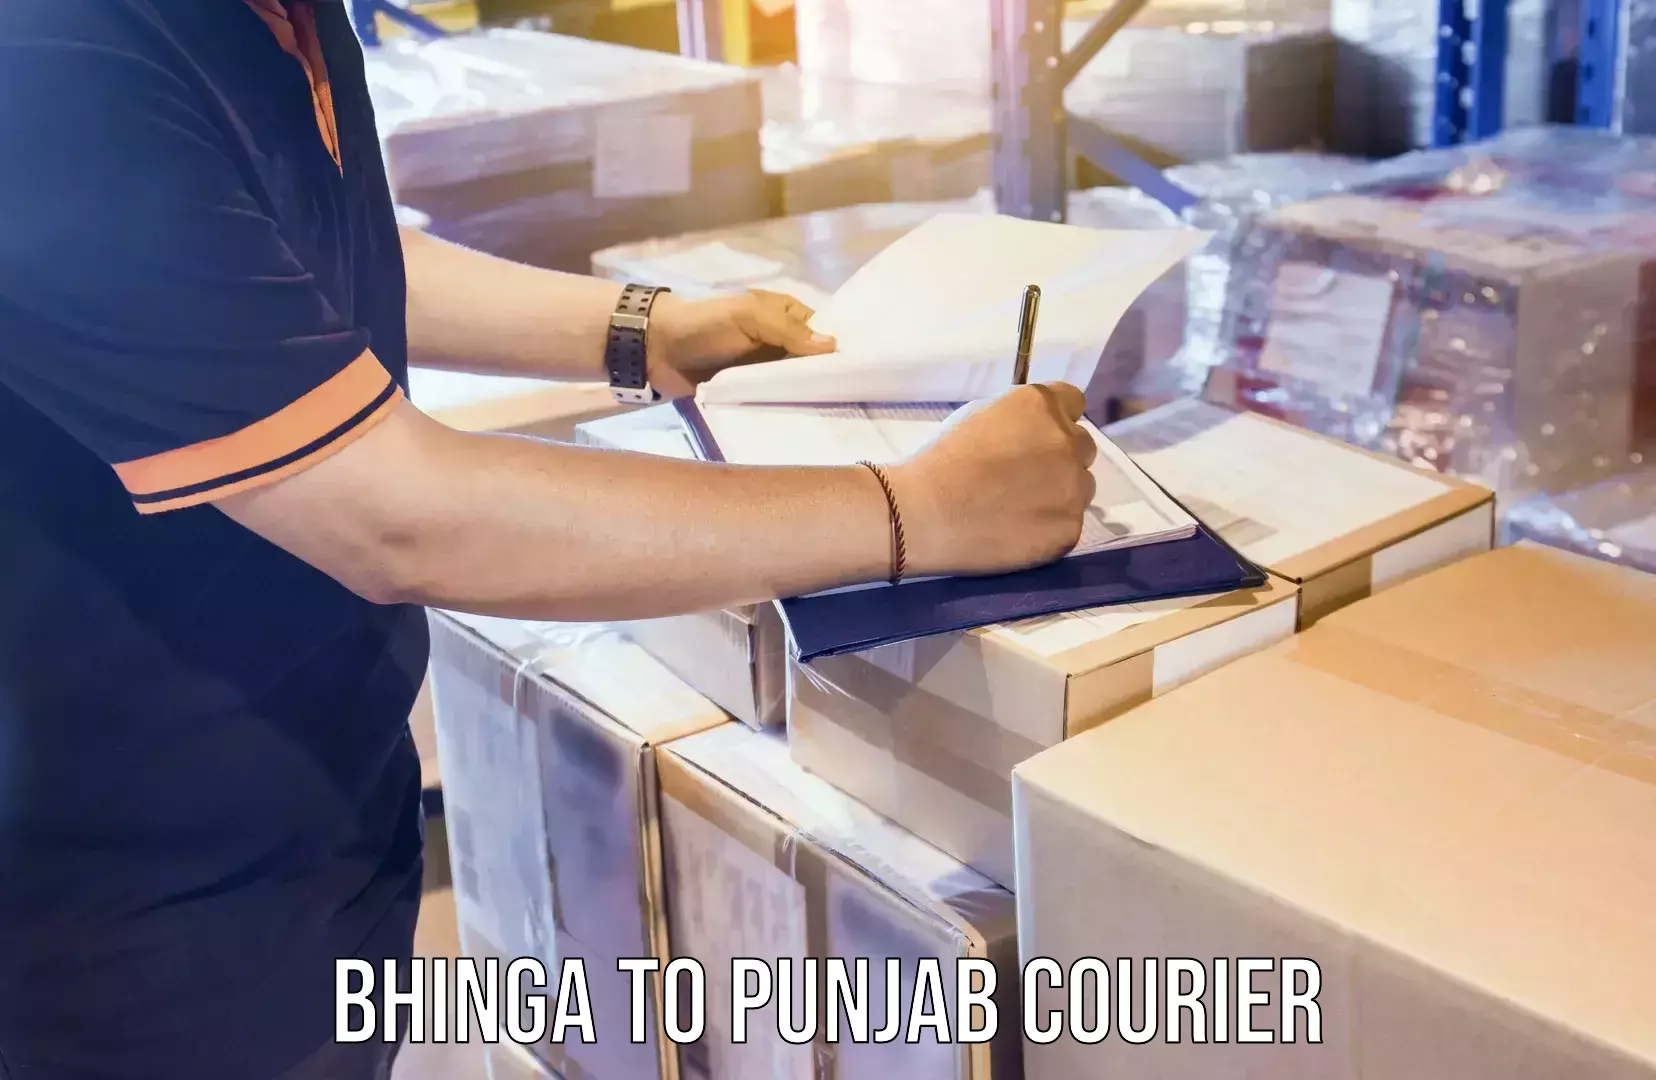 Same-day delivery options Bhinga to Punjab